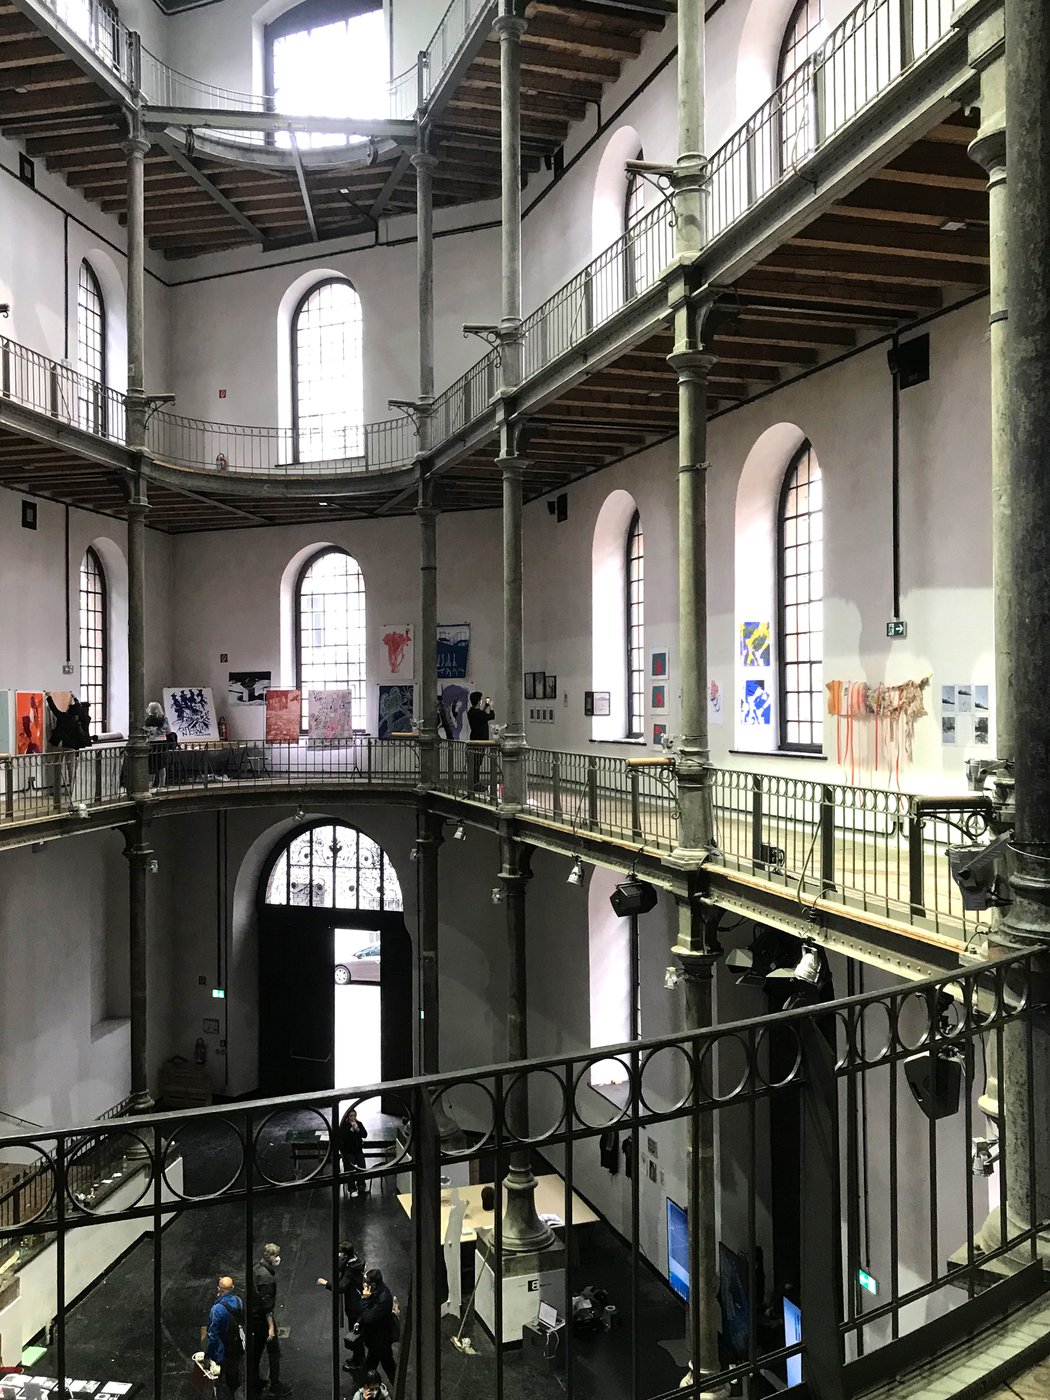 Zu sind sehen sind Ansichten der Parallel Edition Messe 2021 im Atelierhaus Lehargasse mit Arbeiten von Studierenden der Akademie der bildenden Künste Wien.